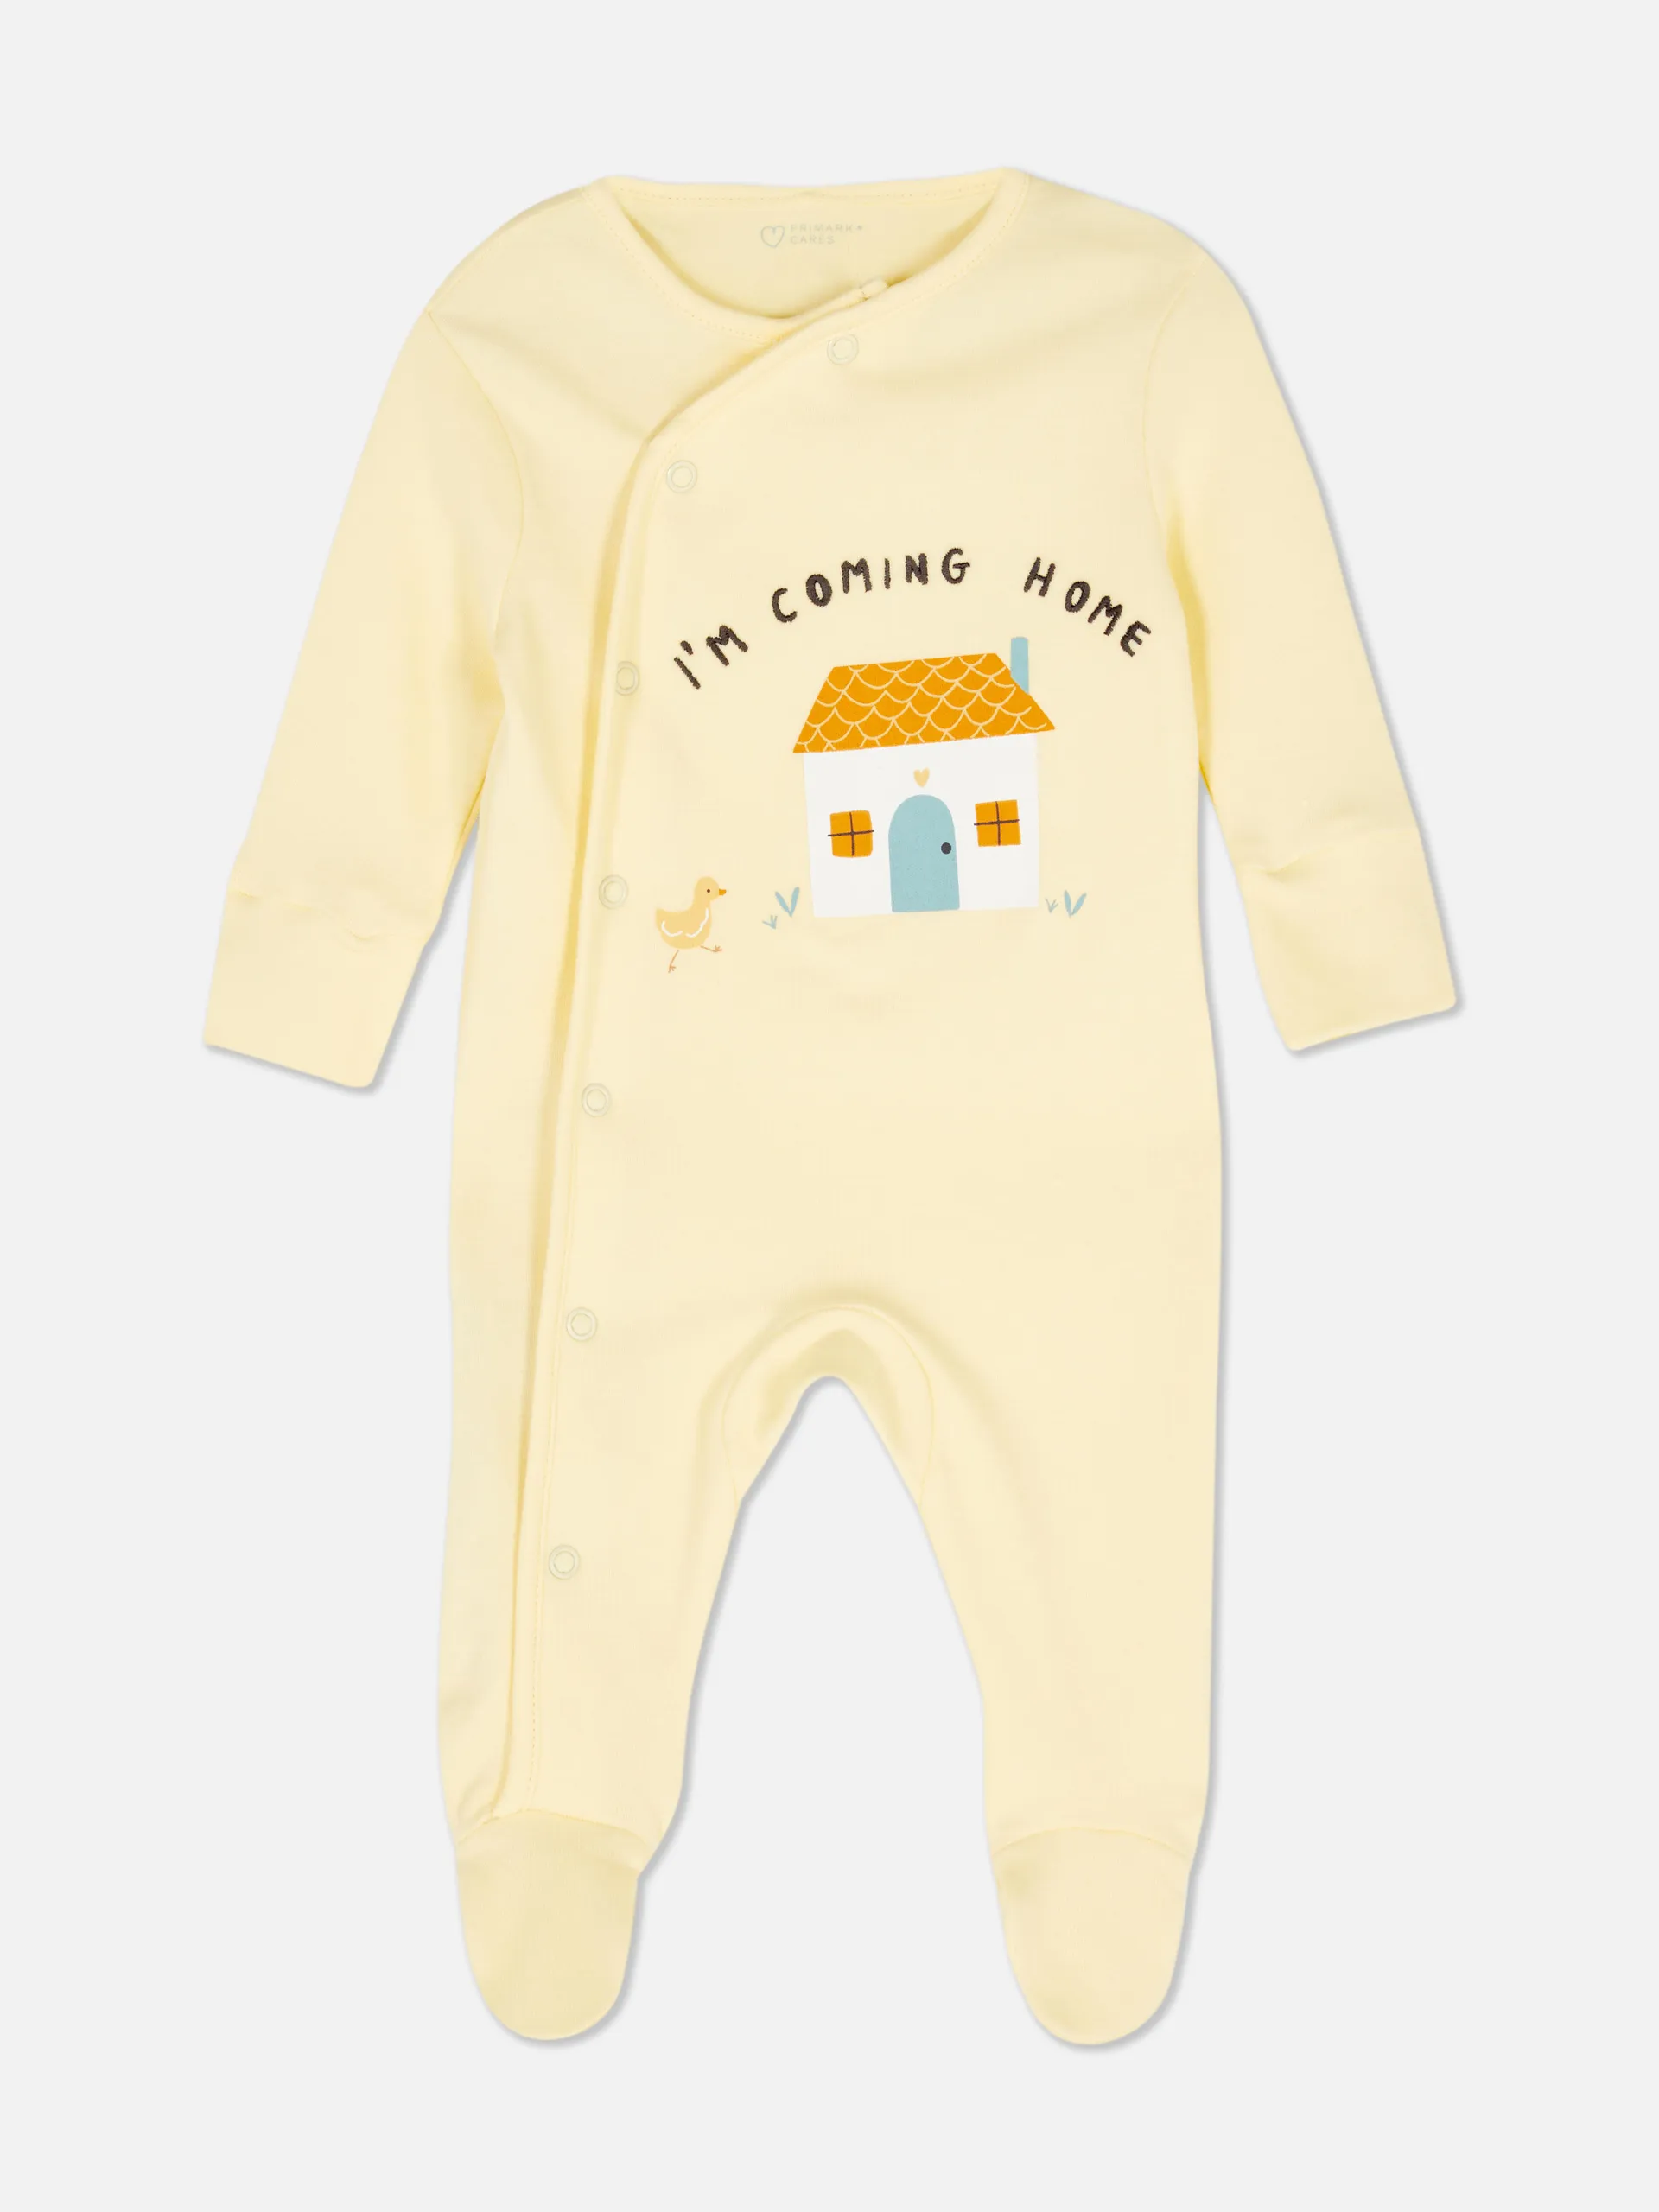 Babys erster Schlafanzug